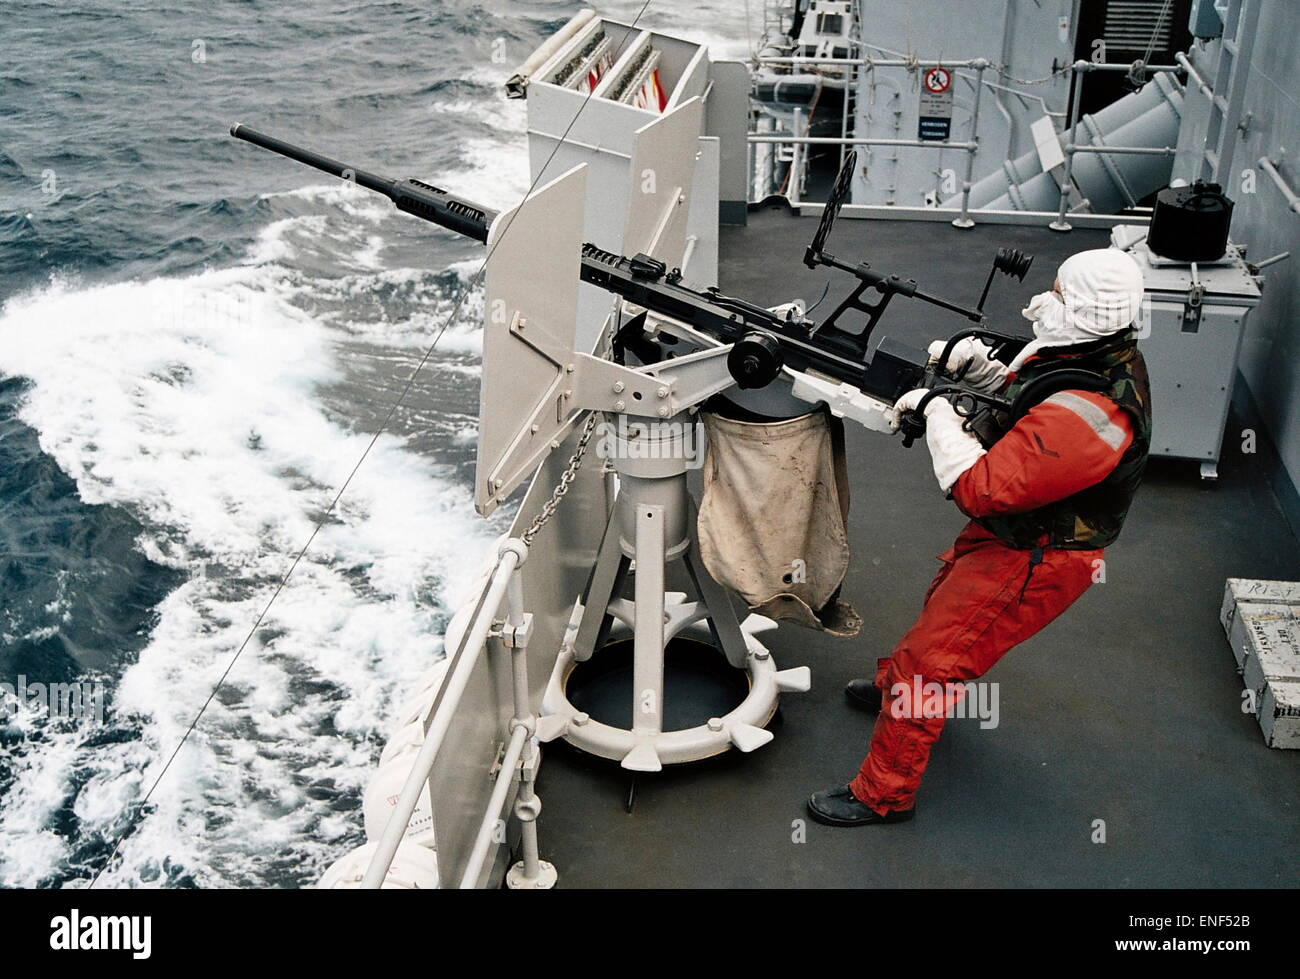 AJAXNETPHOTO. In mare. Preparazione al test incendio un OERLIKON ANTI-aerei pistola da una fregata. Foto:JONATHAN EASTLAND/AJAX REF:3565 5 33 Foto Stock